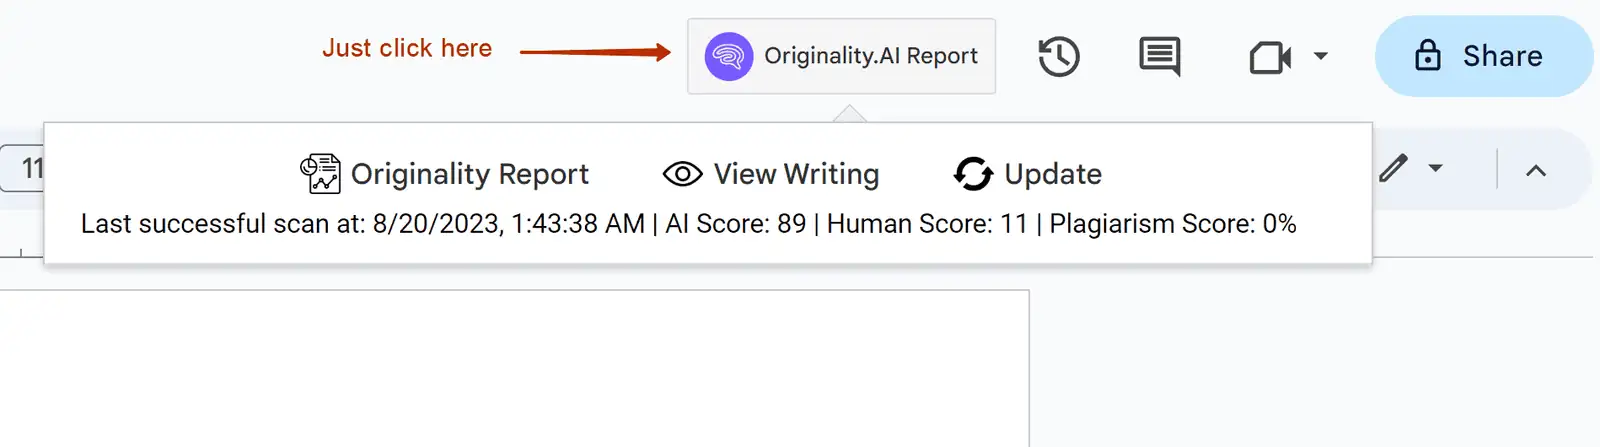 Originality AI report click